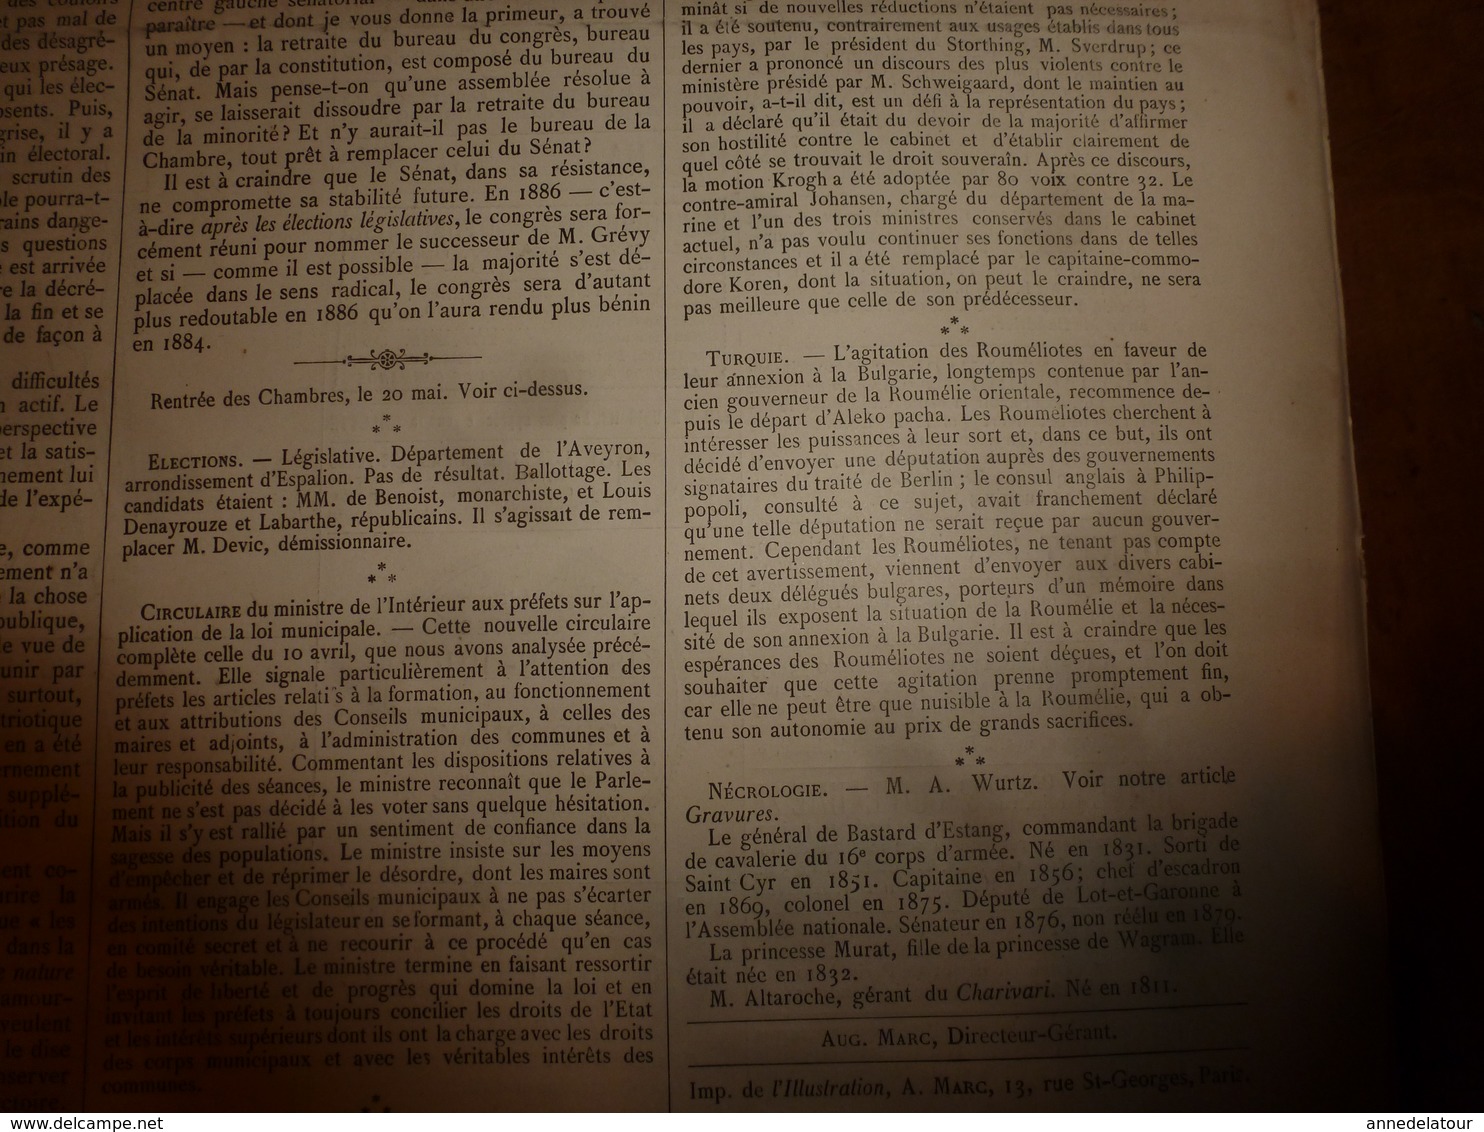 1884 L'ILLUSTRATION: Les fêtes de POMPEÏ (important documentaire texte et gravures); Congo(Vivi,Houssas,etc )etc